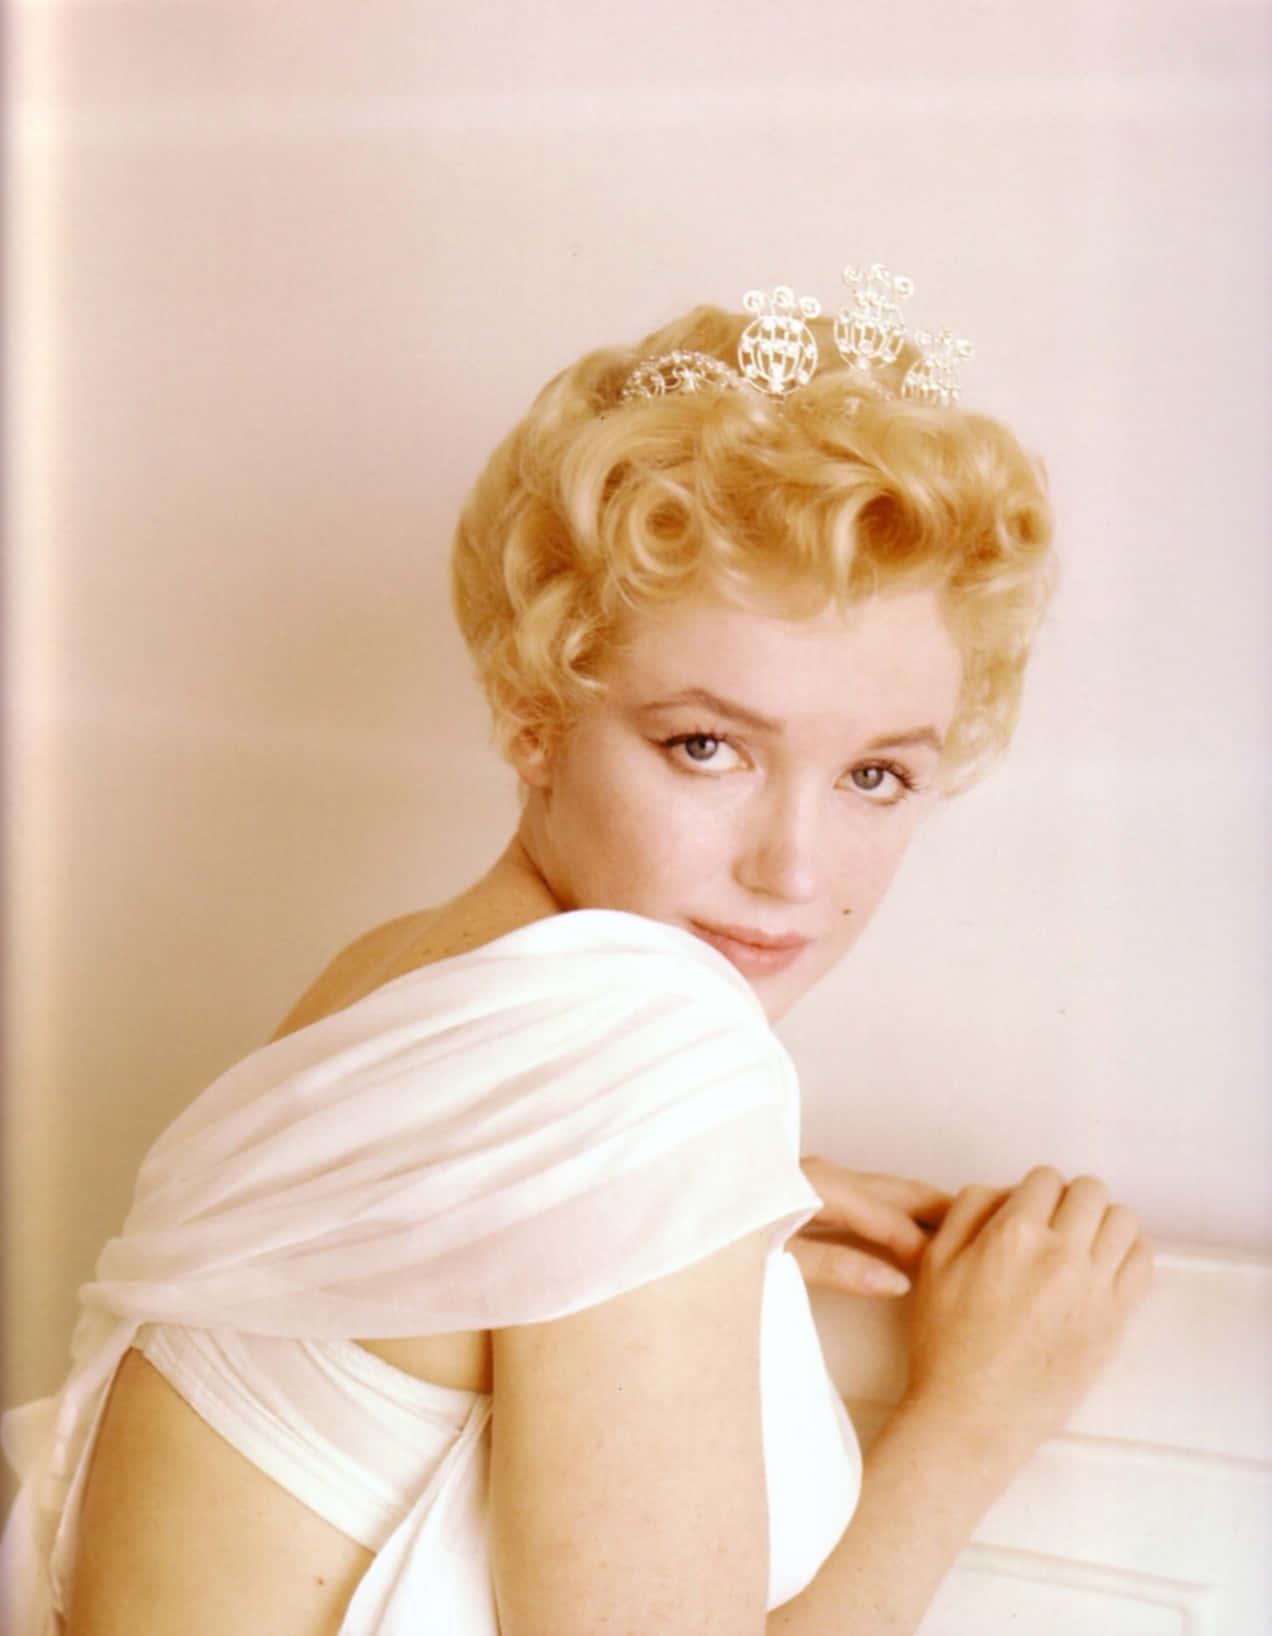 Ikonischeschauspielerin Der 1950er Jahre Marilyn Monroe